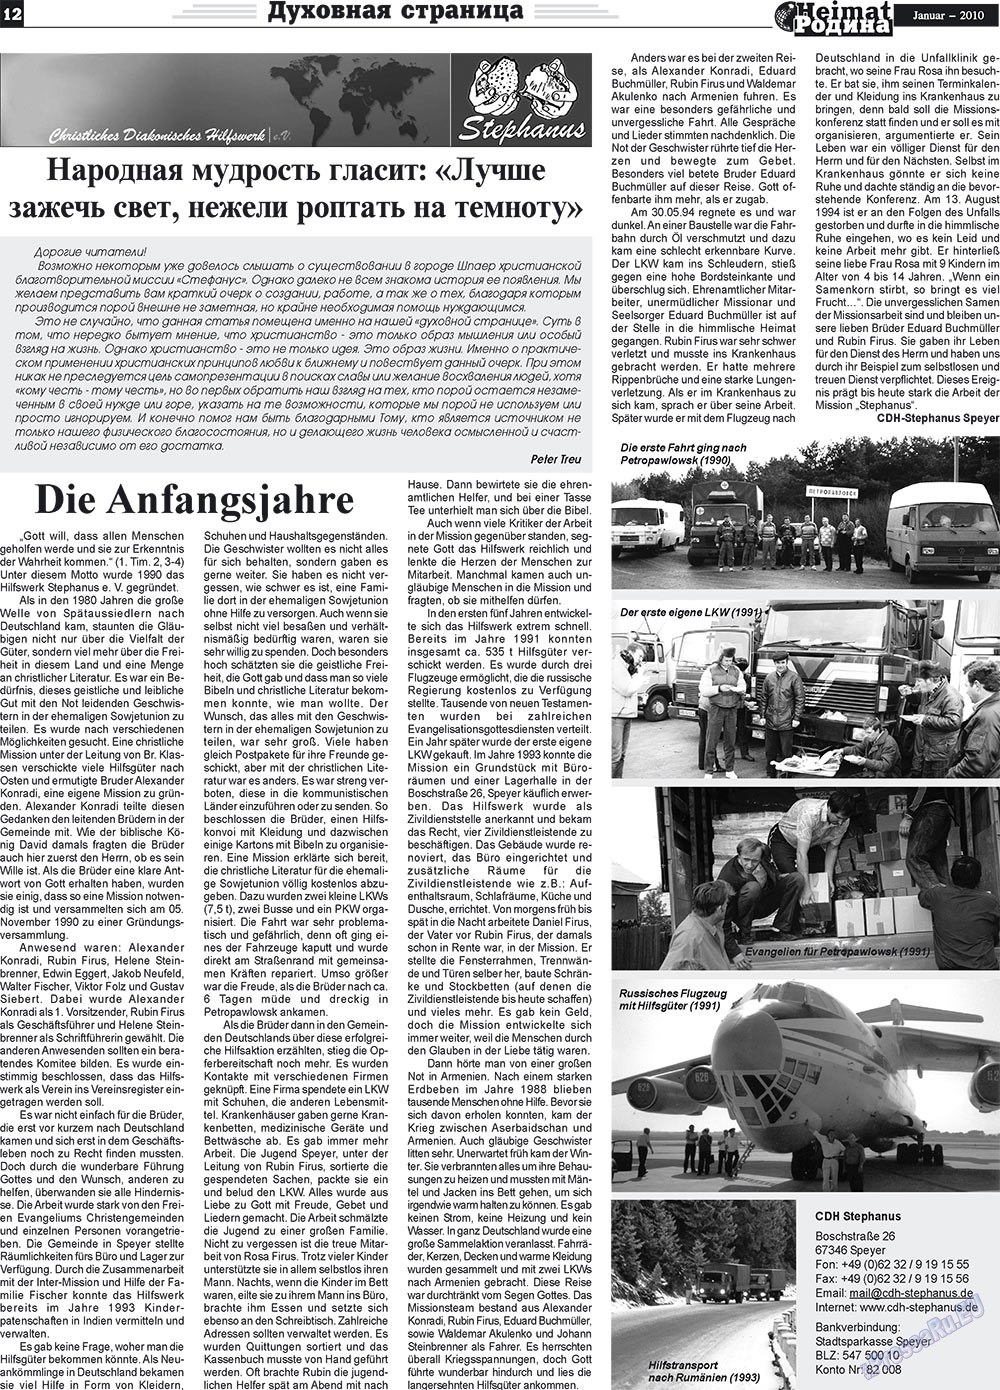 Heimat-Родина (Zeitung). 2010 Jahr, Ausgabe 1, Seite 12